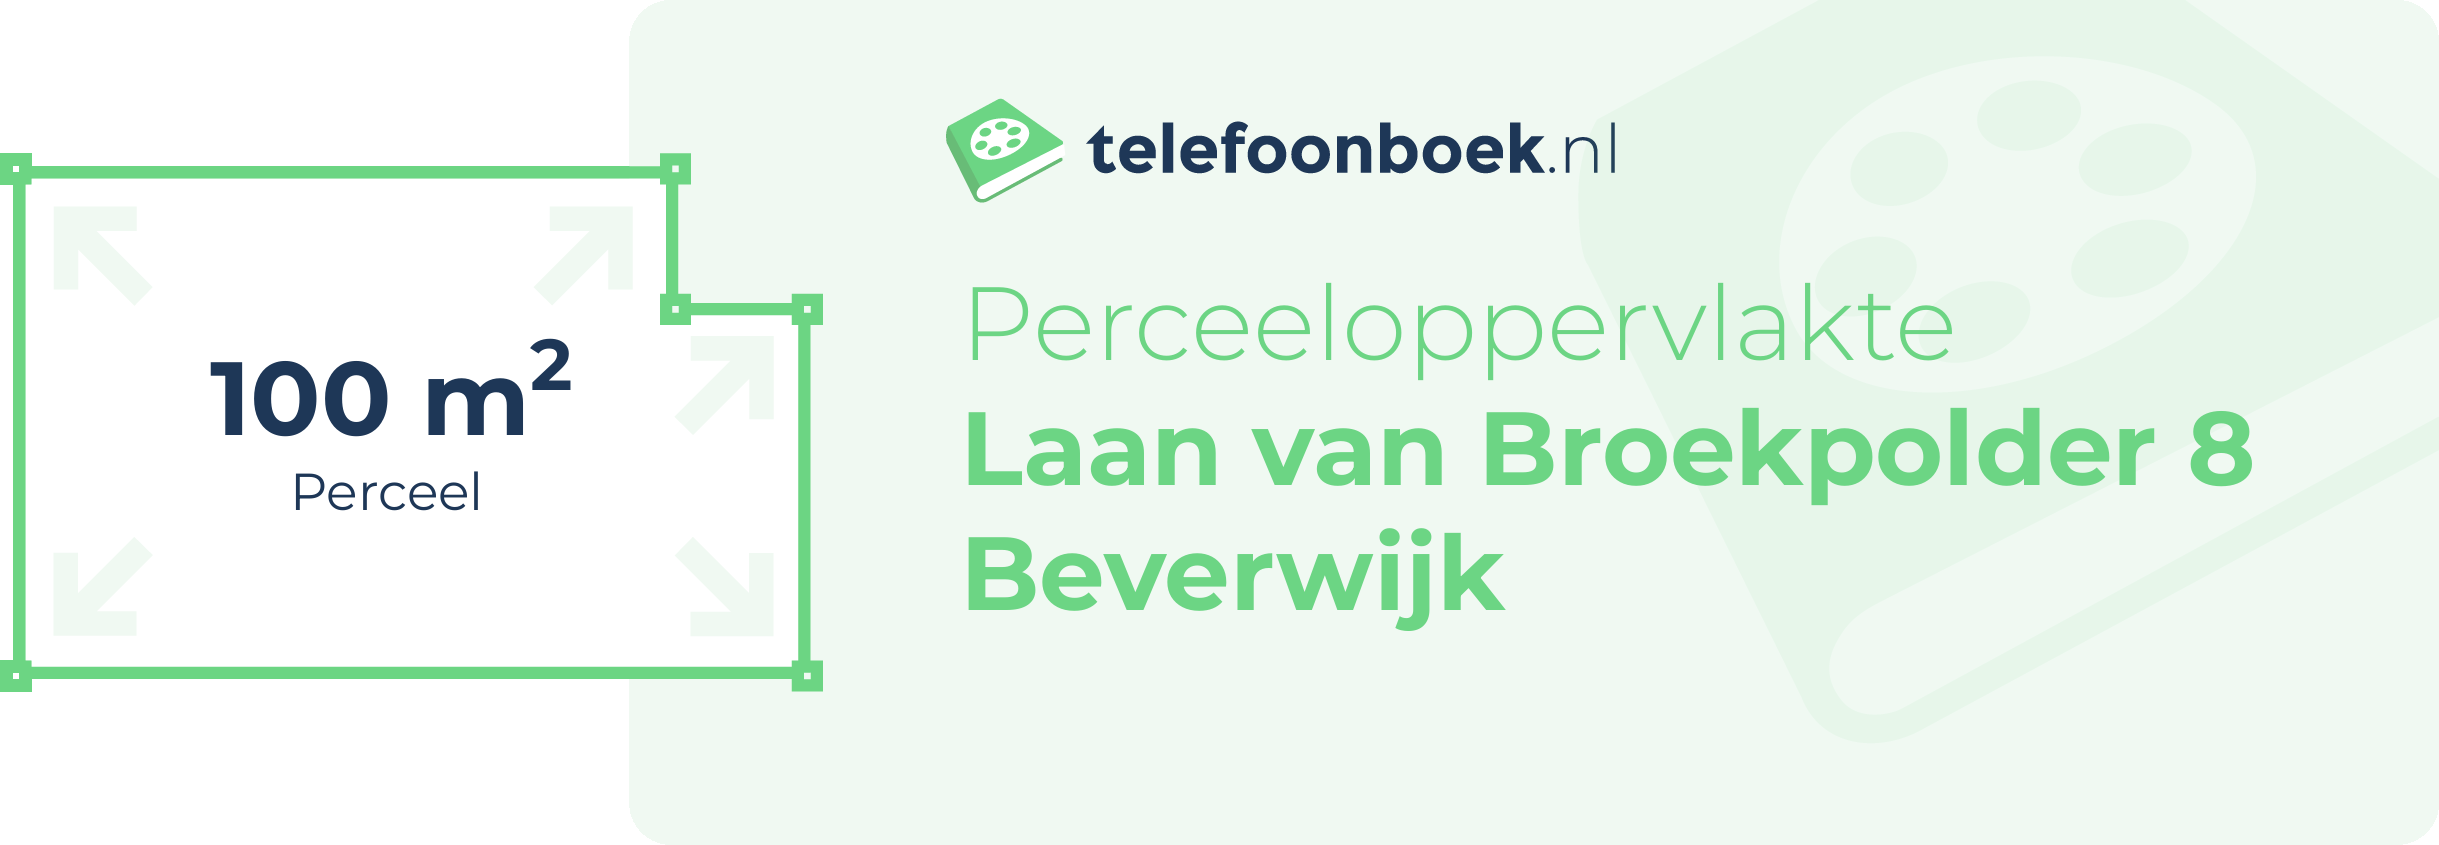 Perceeloppervlakte Laan Van Broekpolder 8 Beverwijk